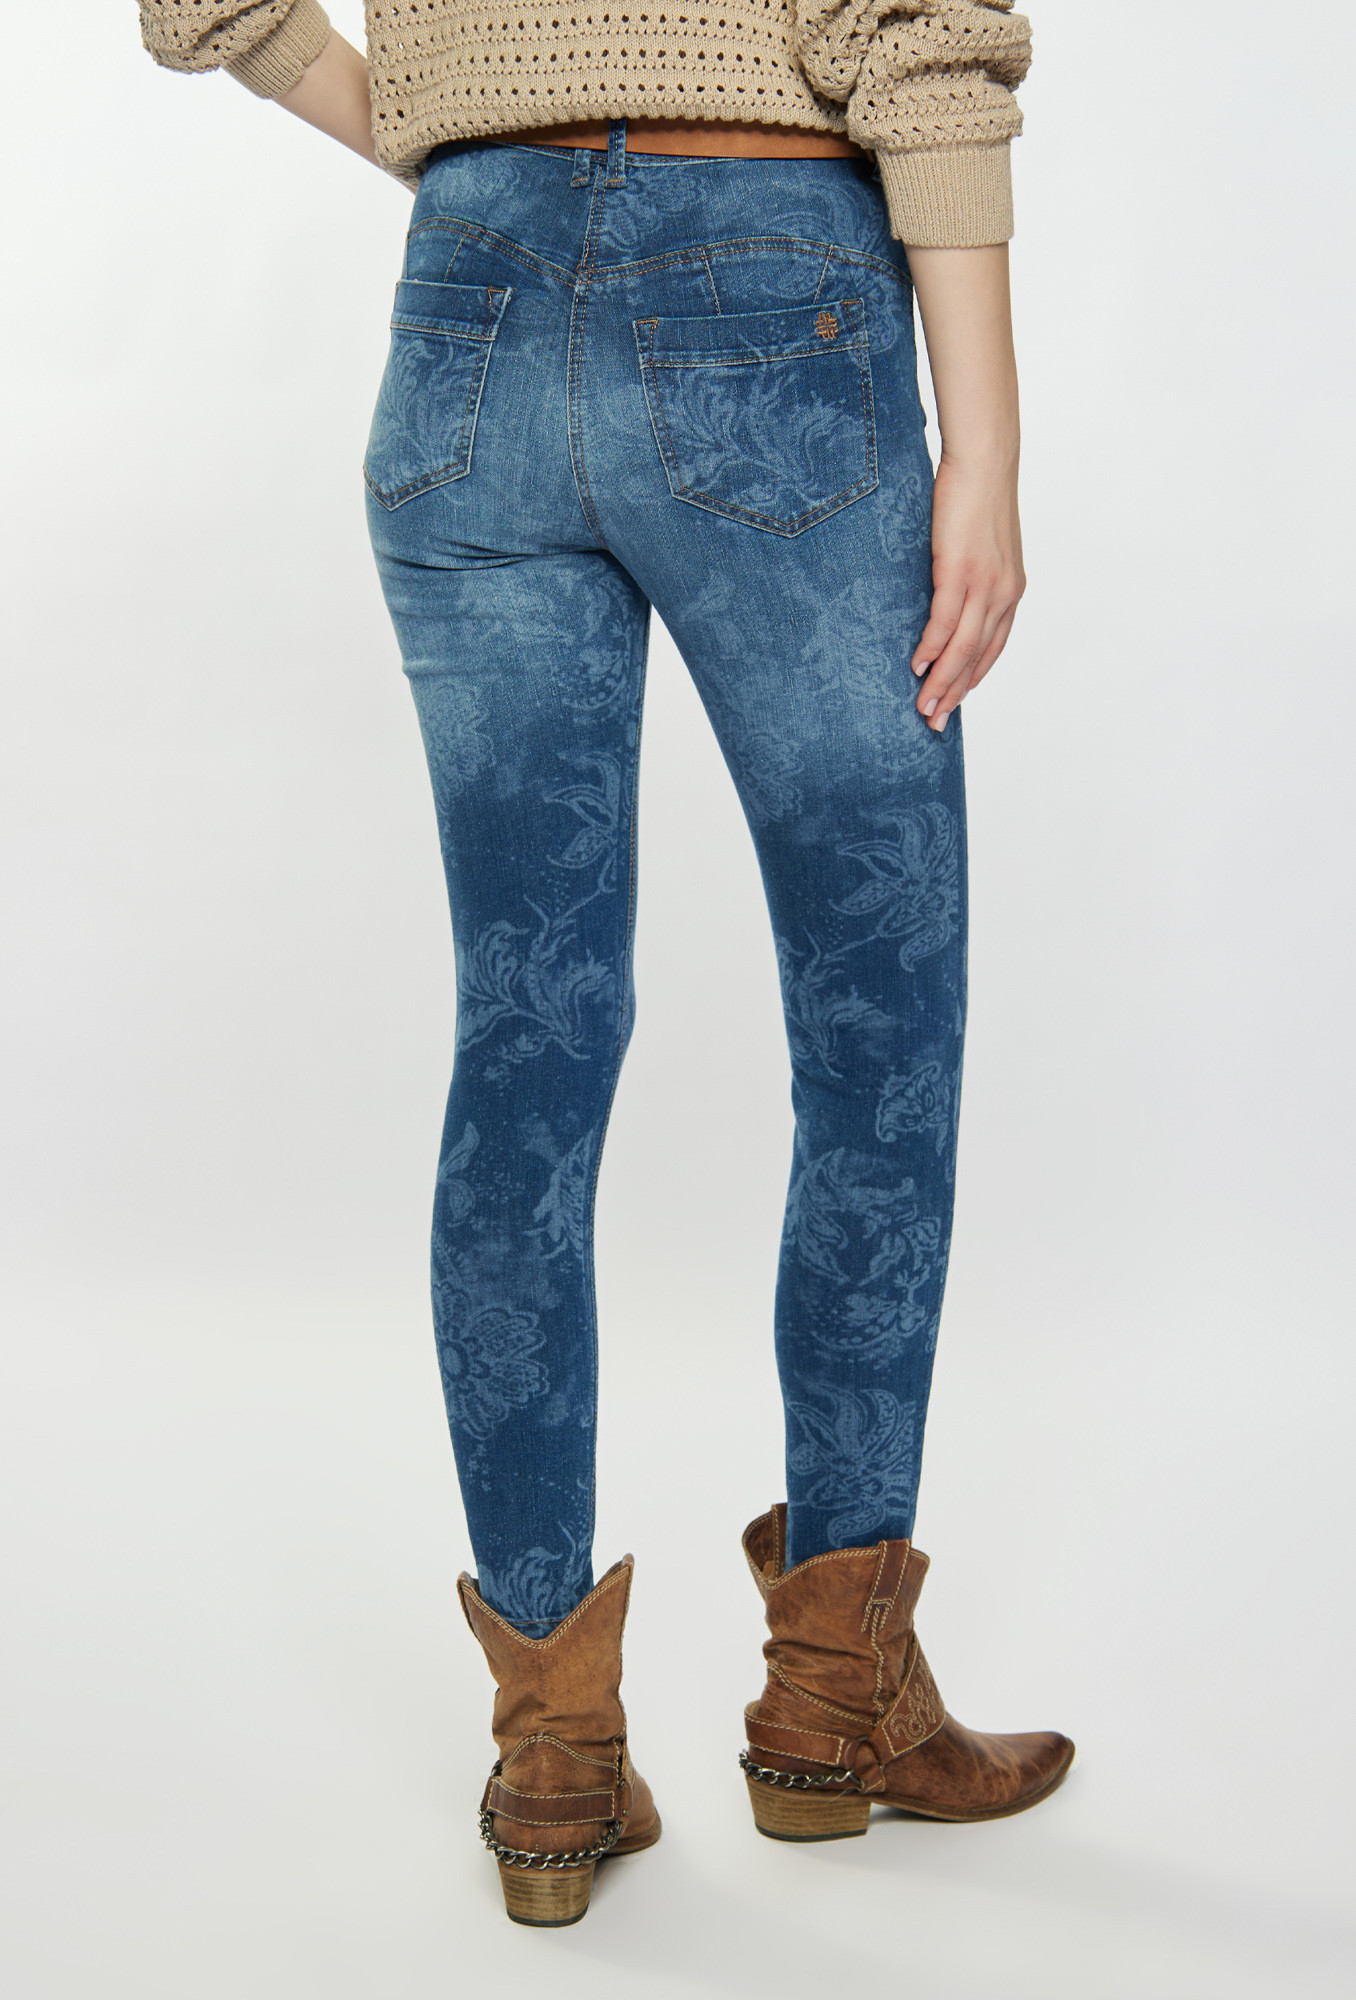 Monnari Jeans Vzorované džíny modré 42